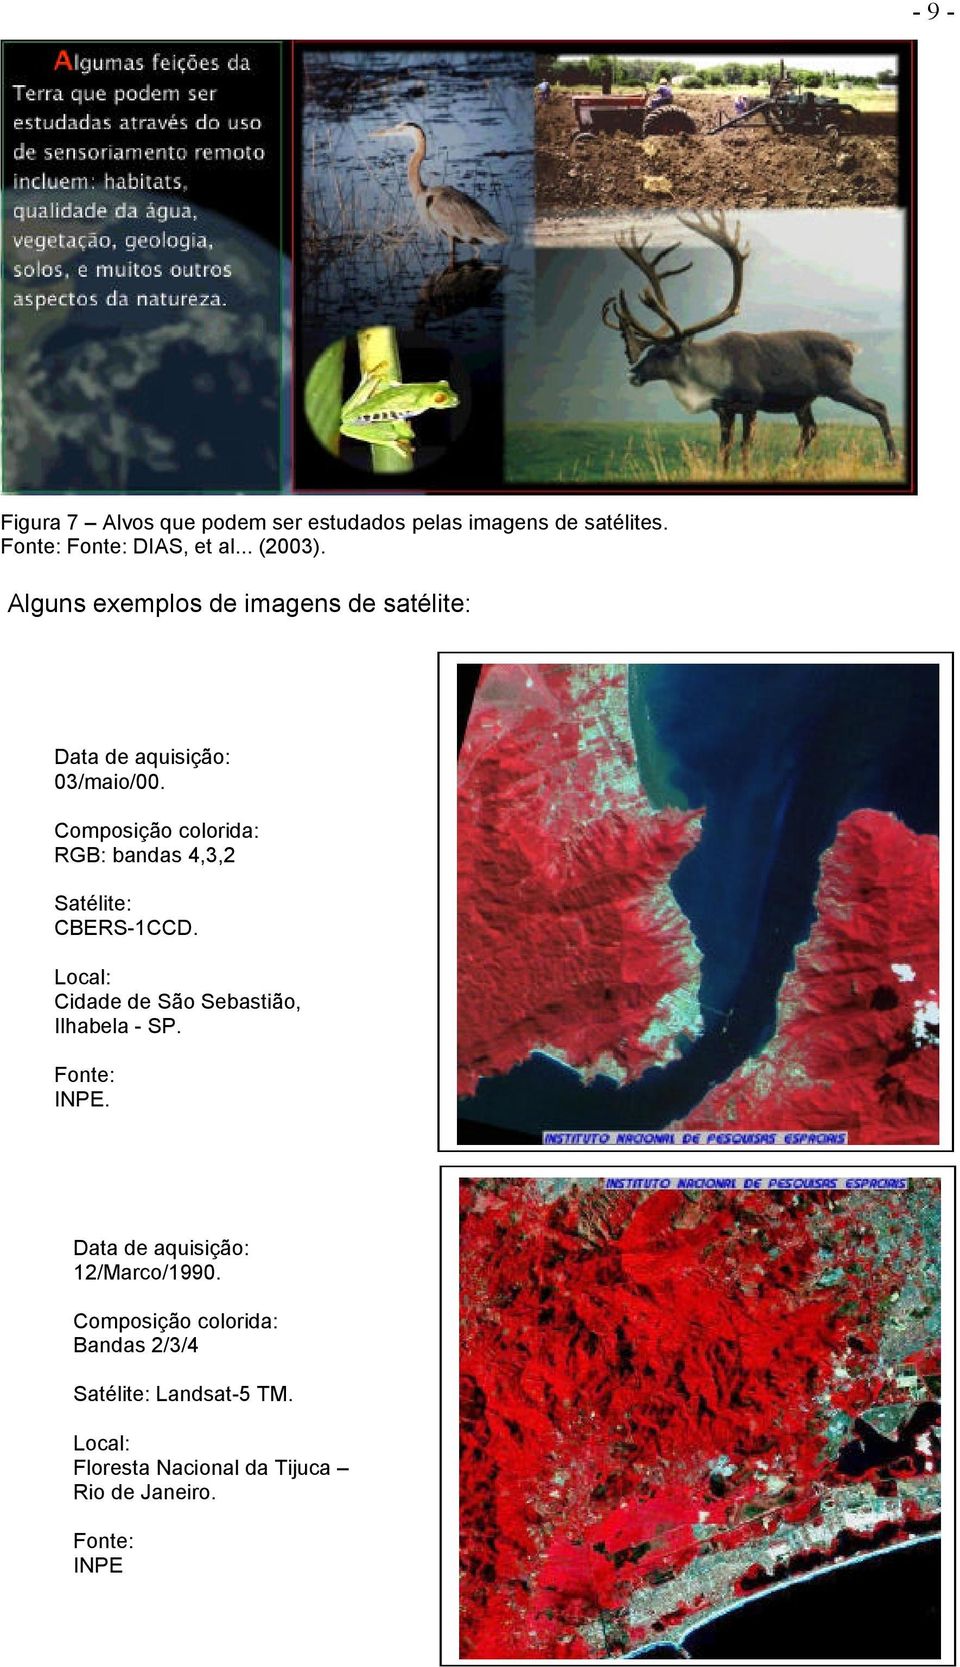 Composição colorida: RGB: bandas 4,3,2 Satélite: CBERS-1CCD. Local: Cidade de São Sebastião, Ilhabela - SP.